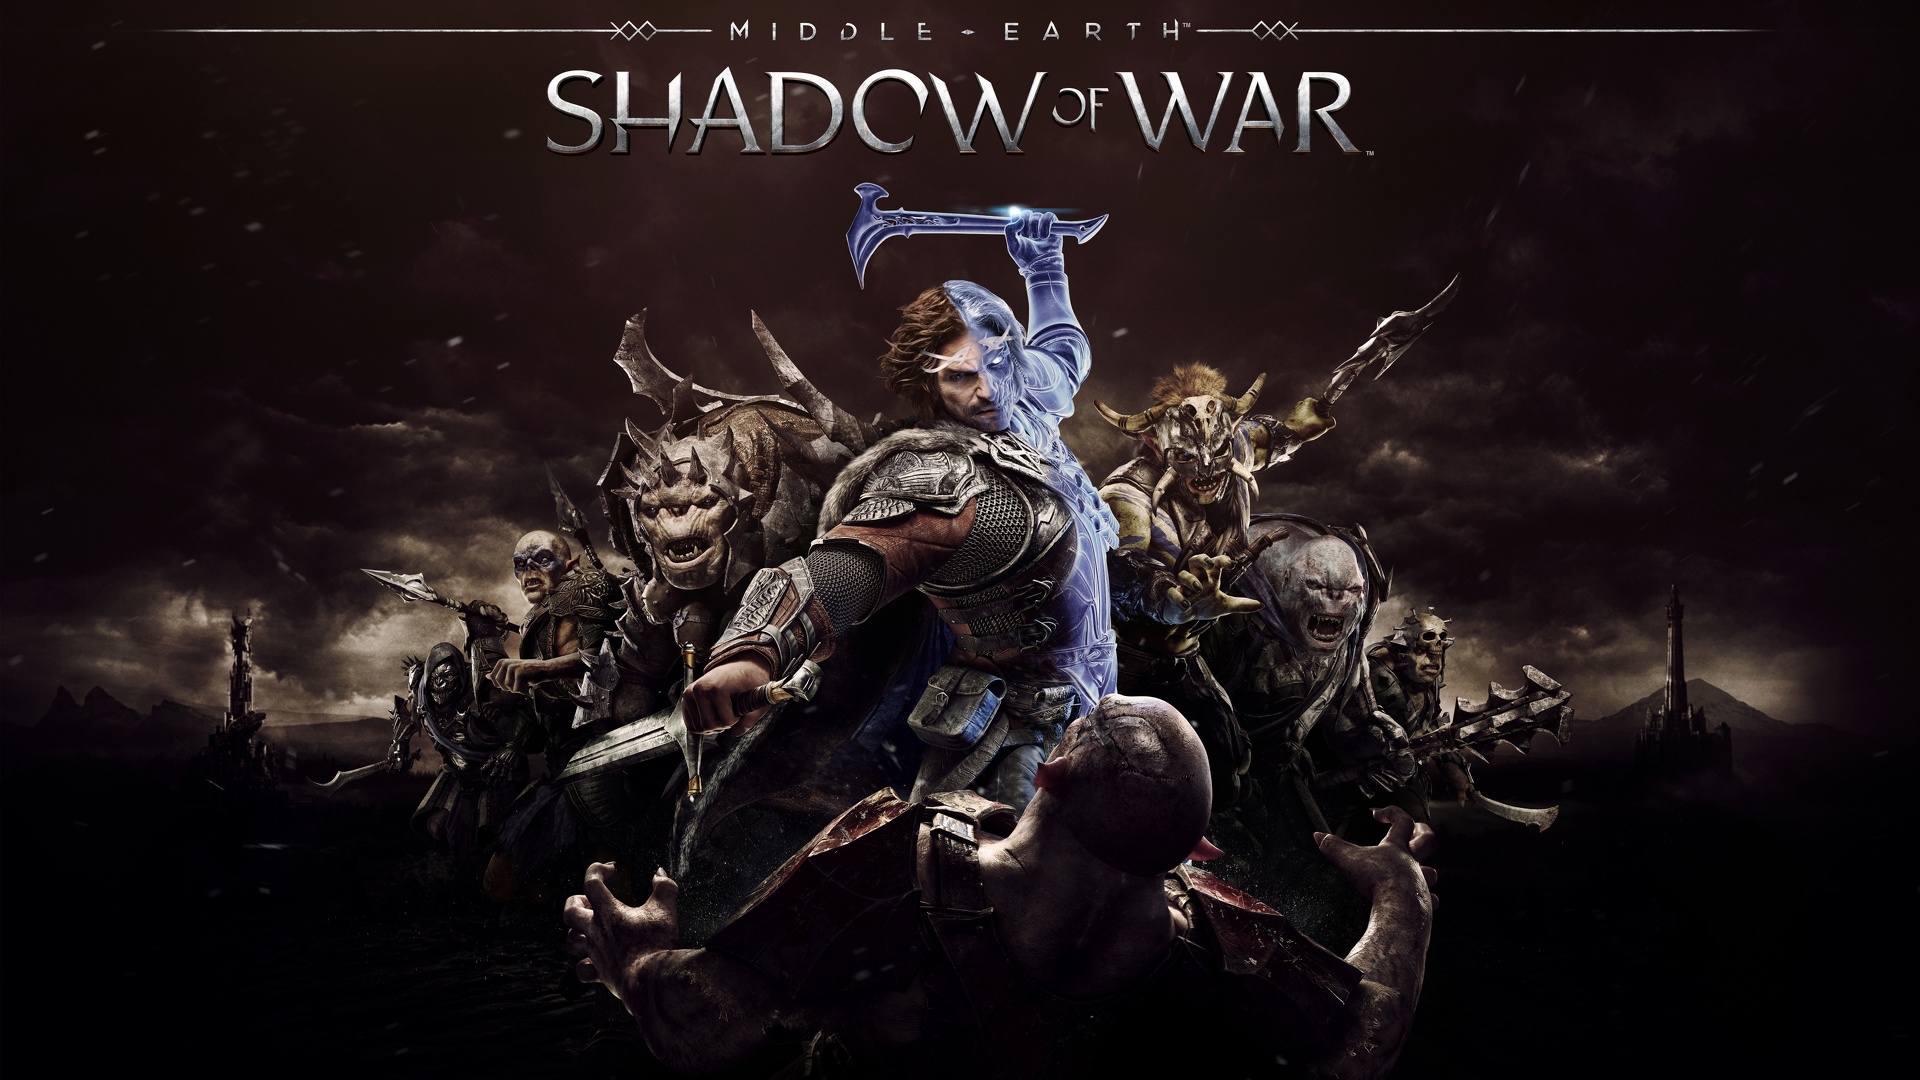 Shadow of War - fond d'écran.jpg